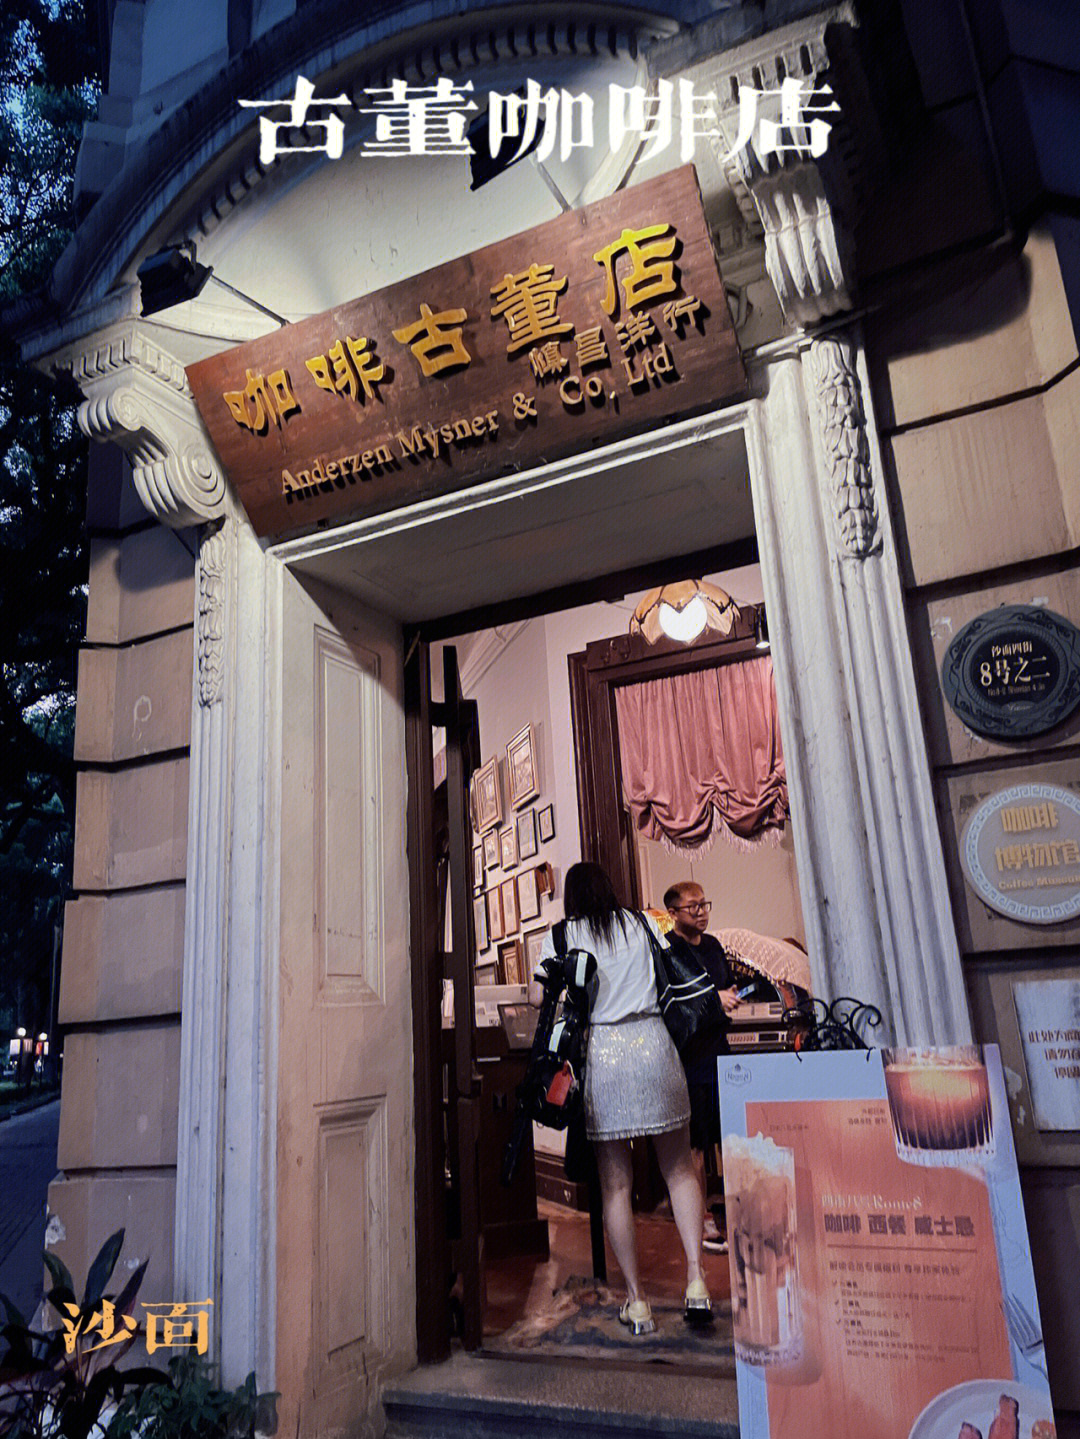 位于沙面的古董咖啡店·慎昌洋行,犹如走进了民国时期的咖啡店,一整圈